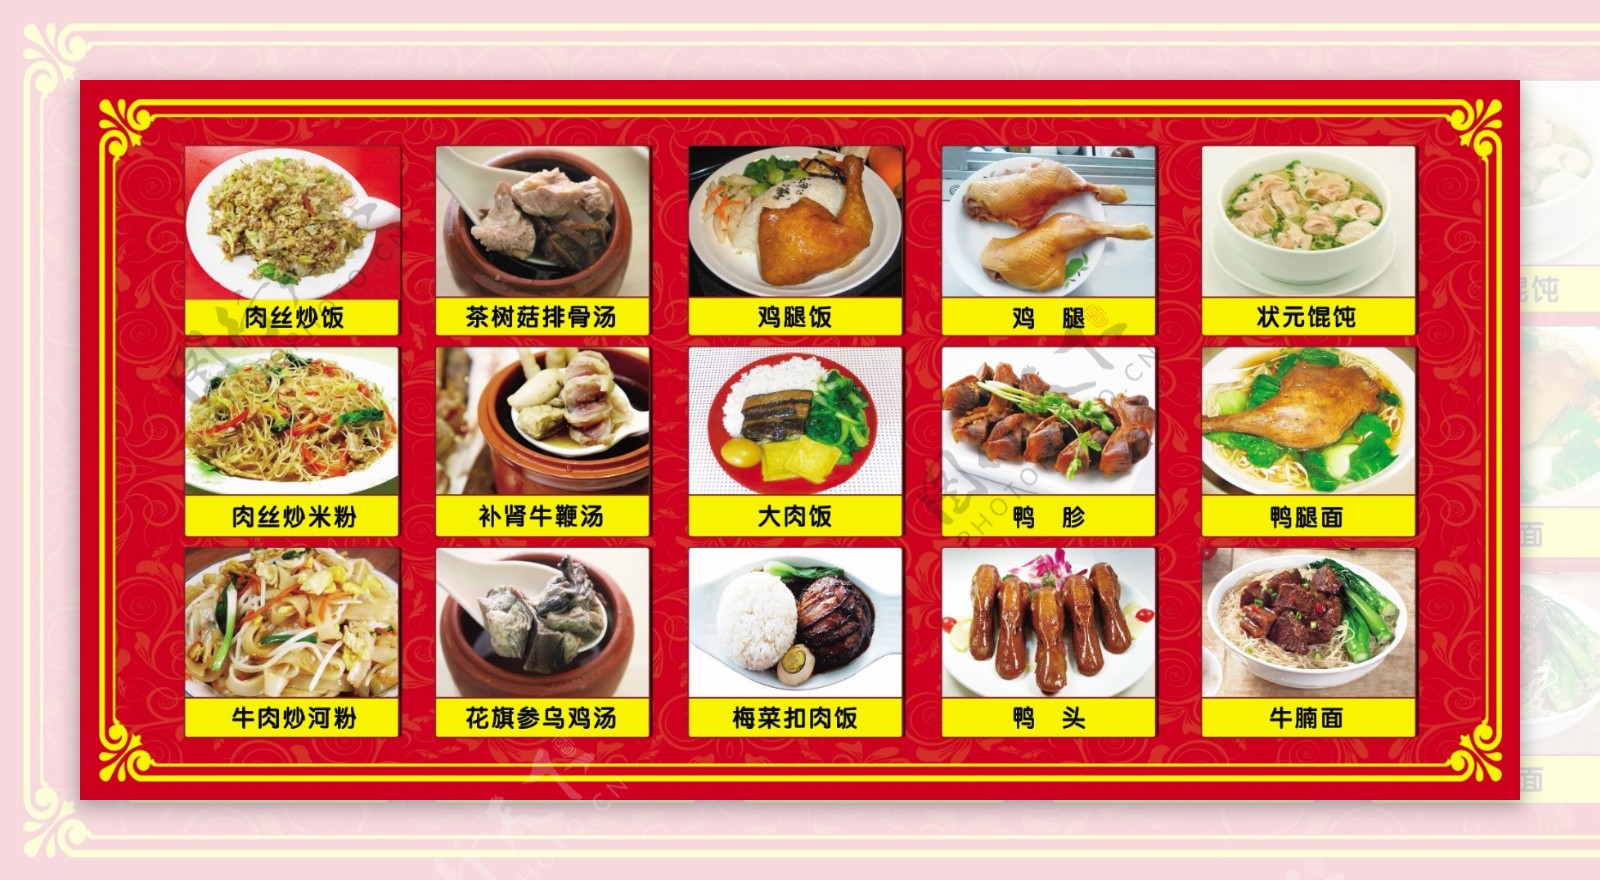 沙县小吃菜谱广告